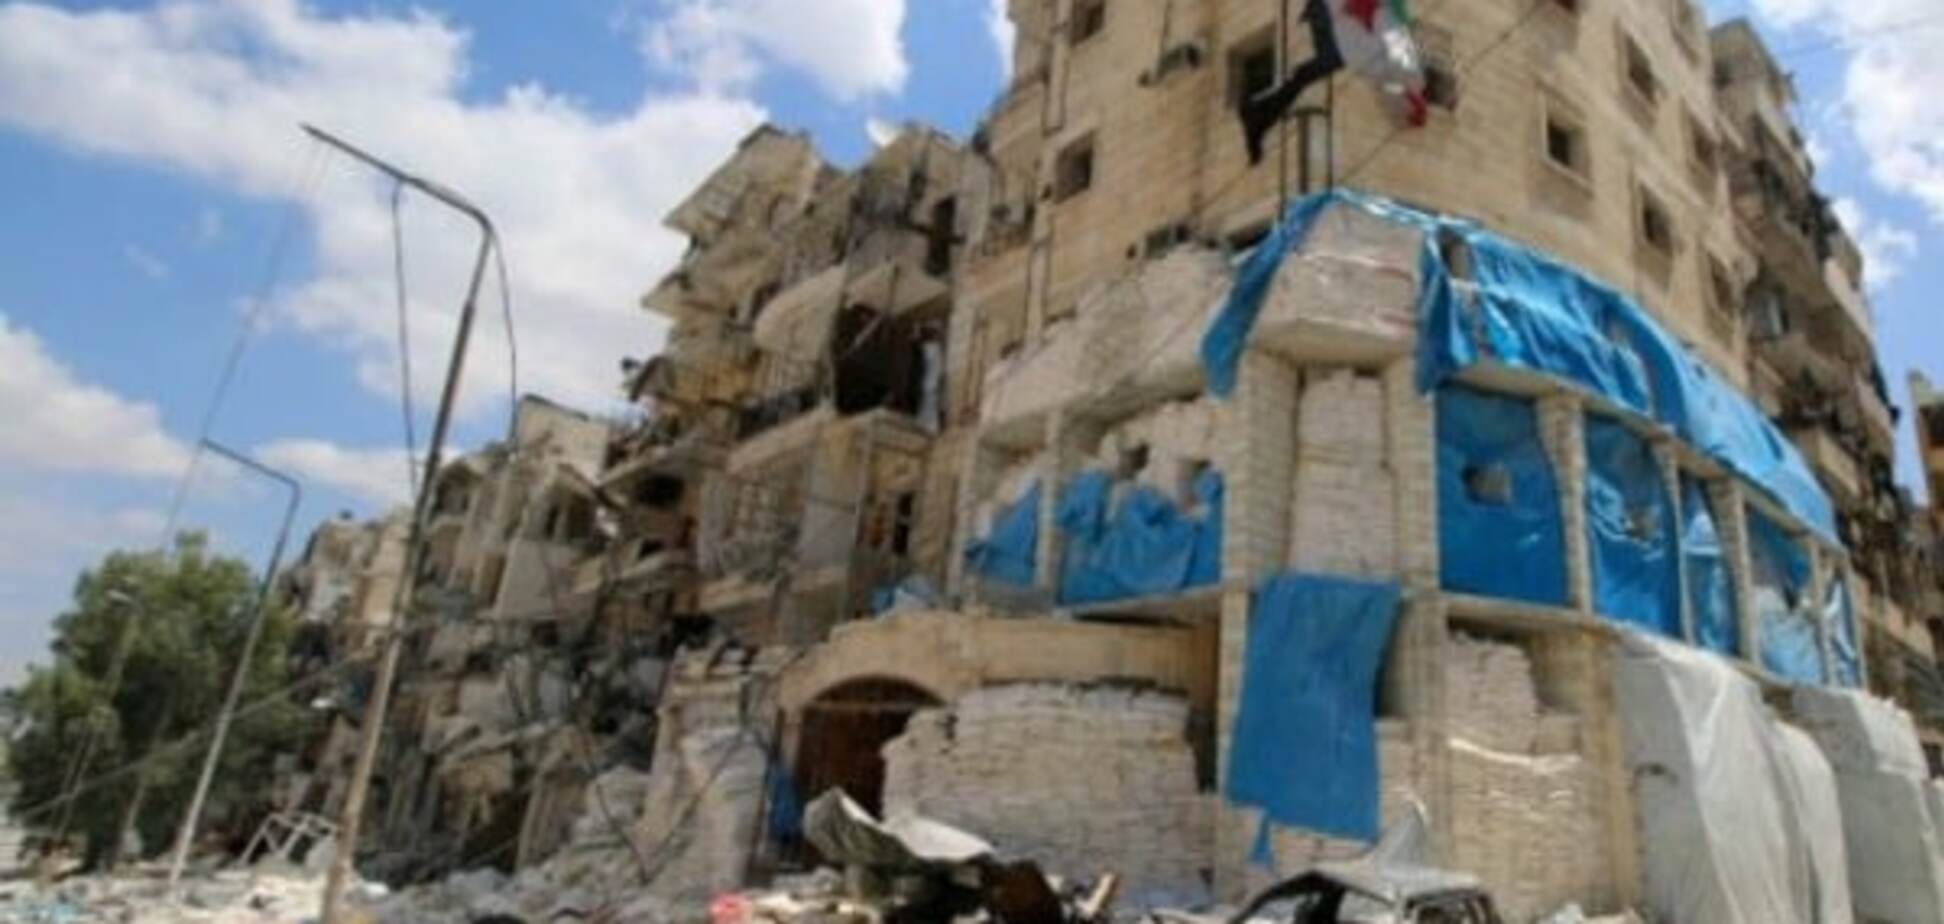 Перемирие под угрозой срыва: самолеты нанесли удар по Алеппо